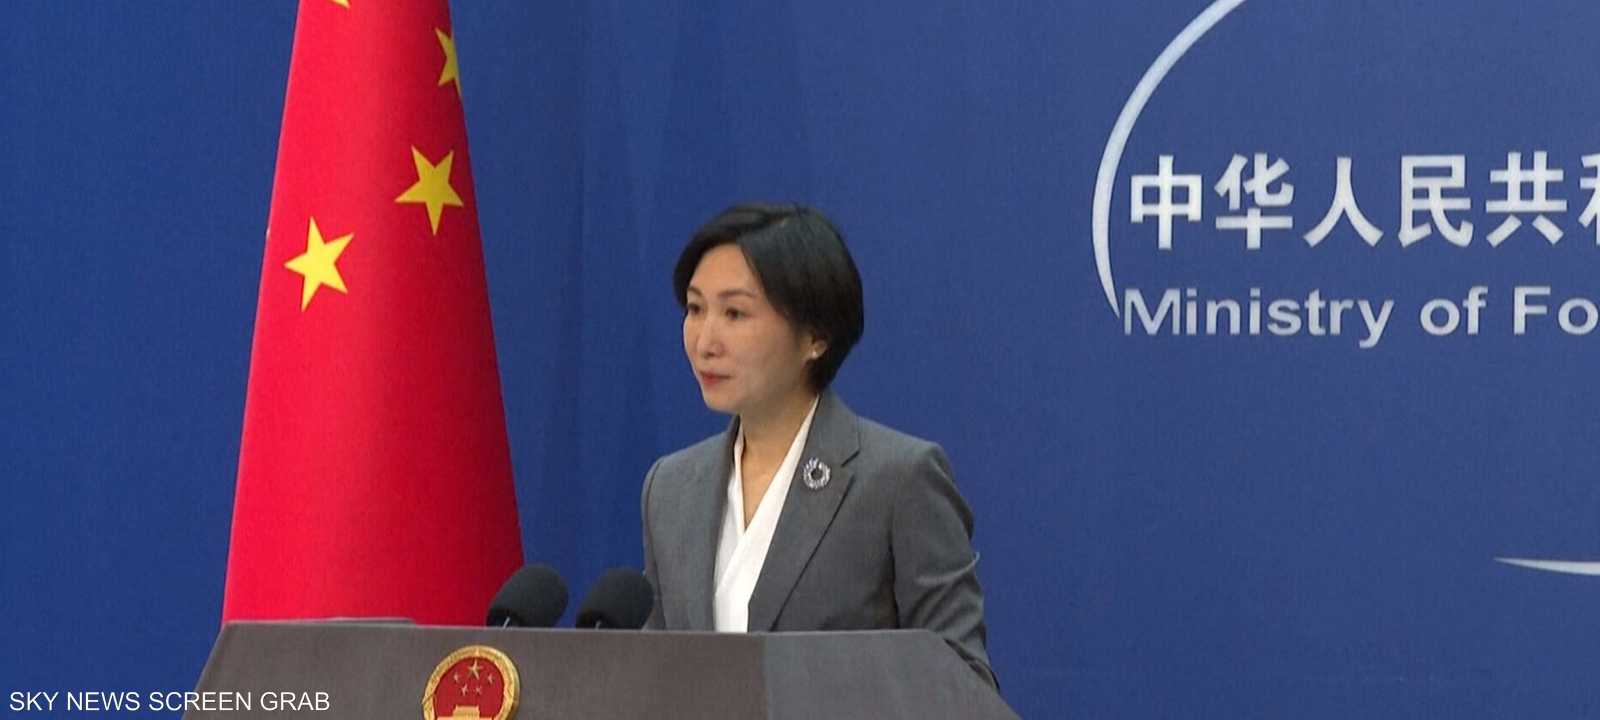 المتحدثة باسم وزارة الخارجية، ماو نينغ